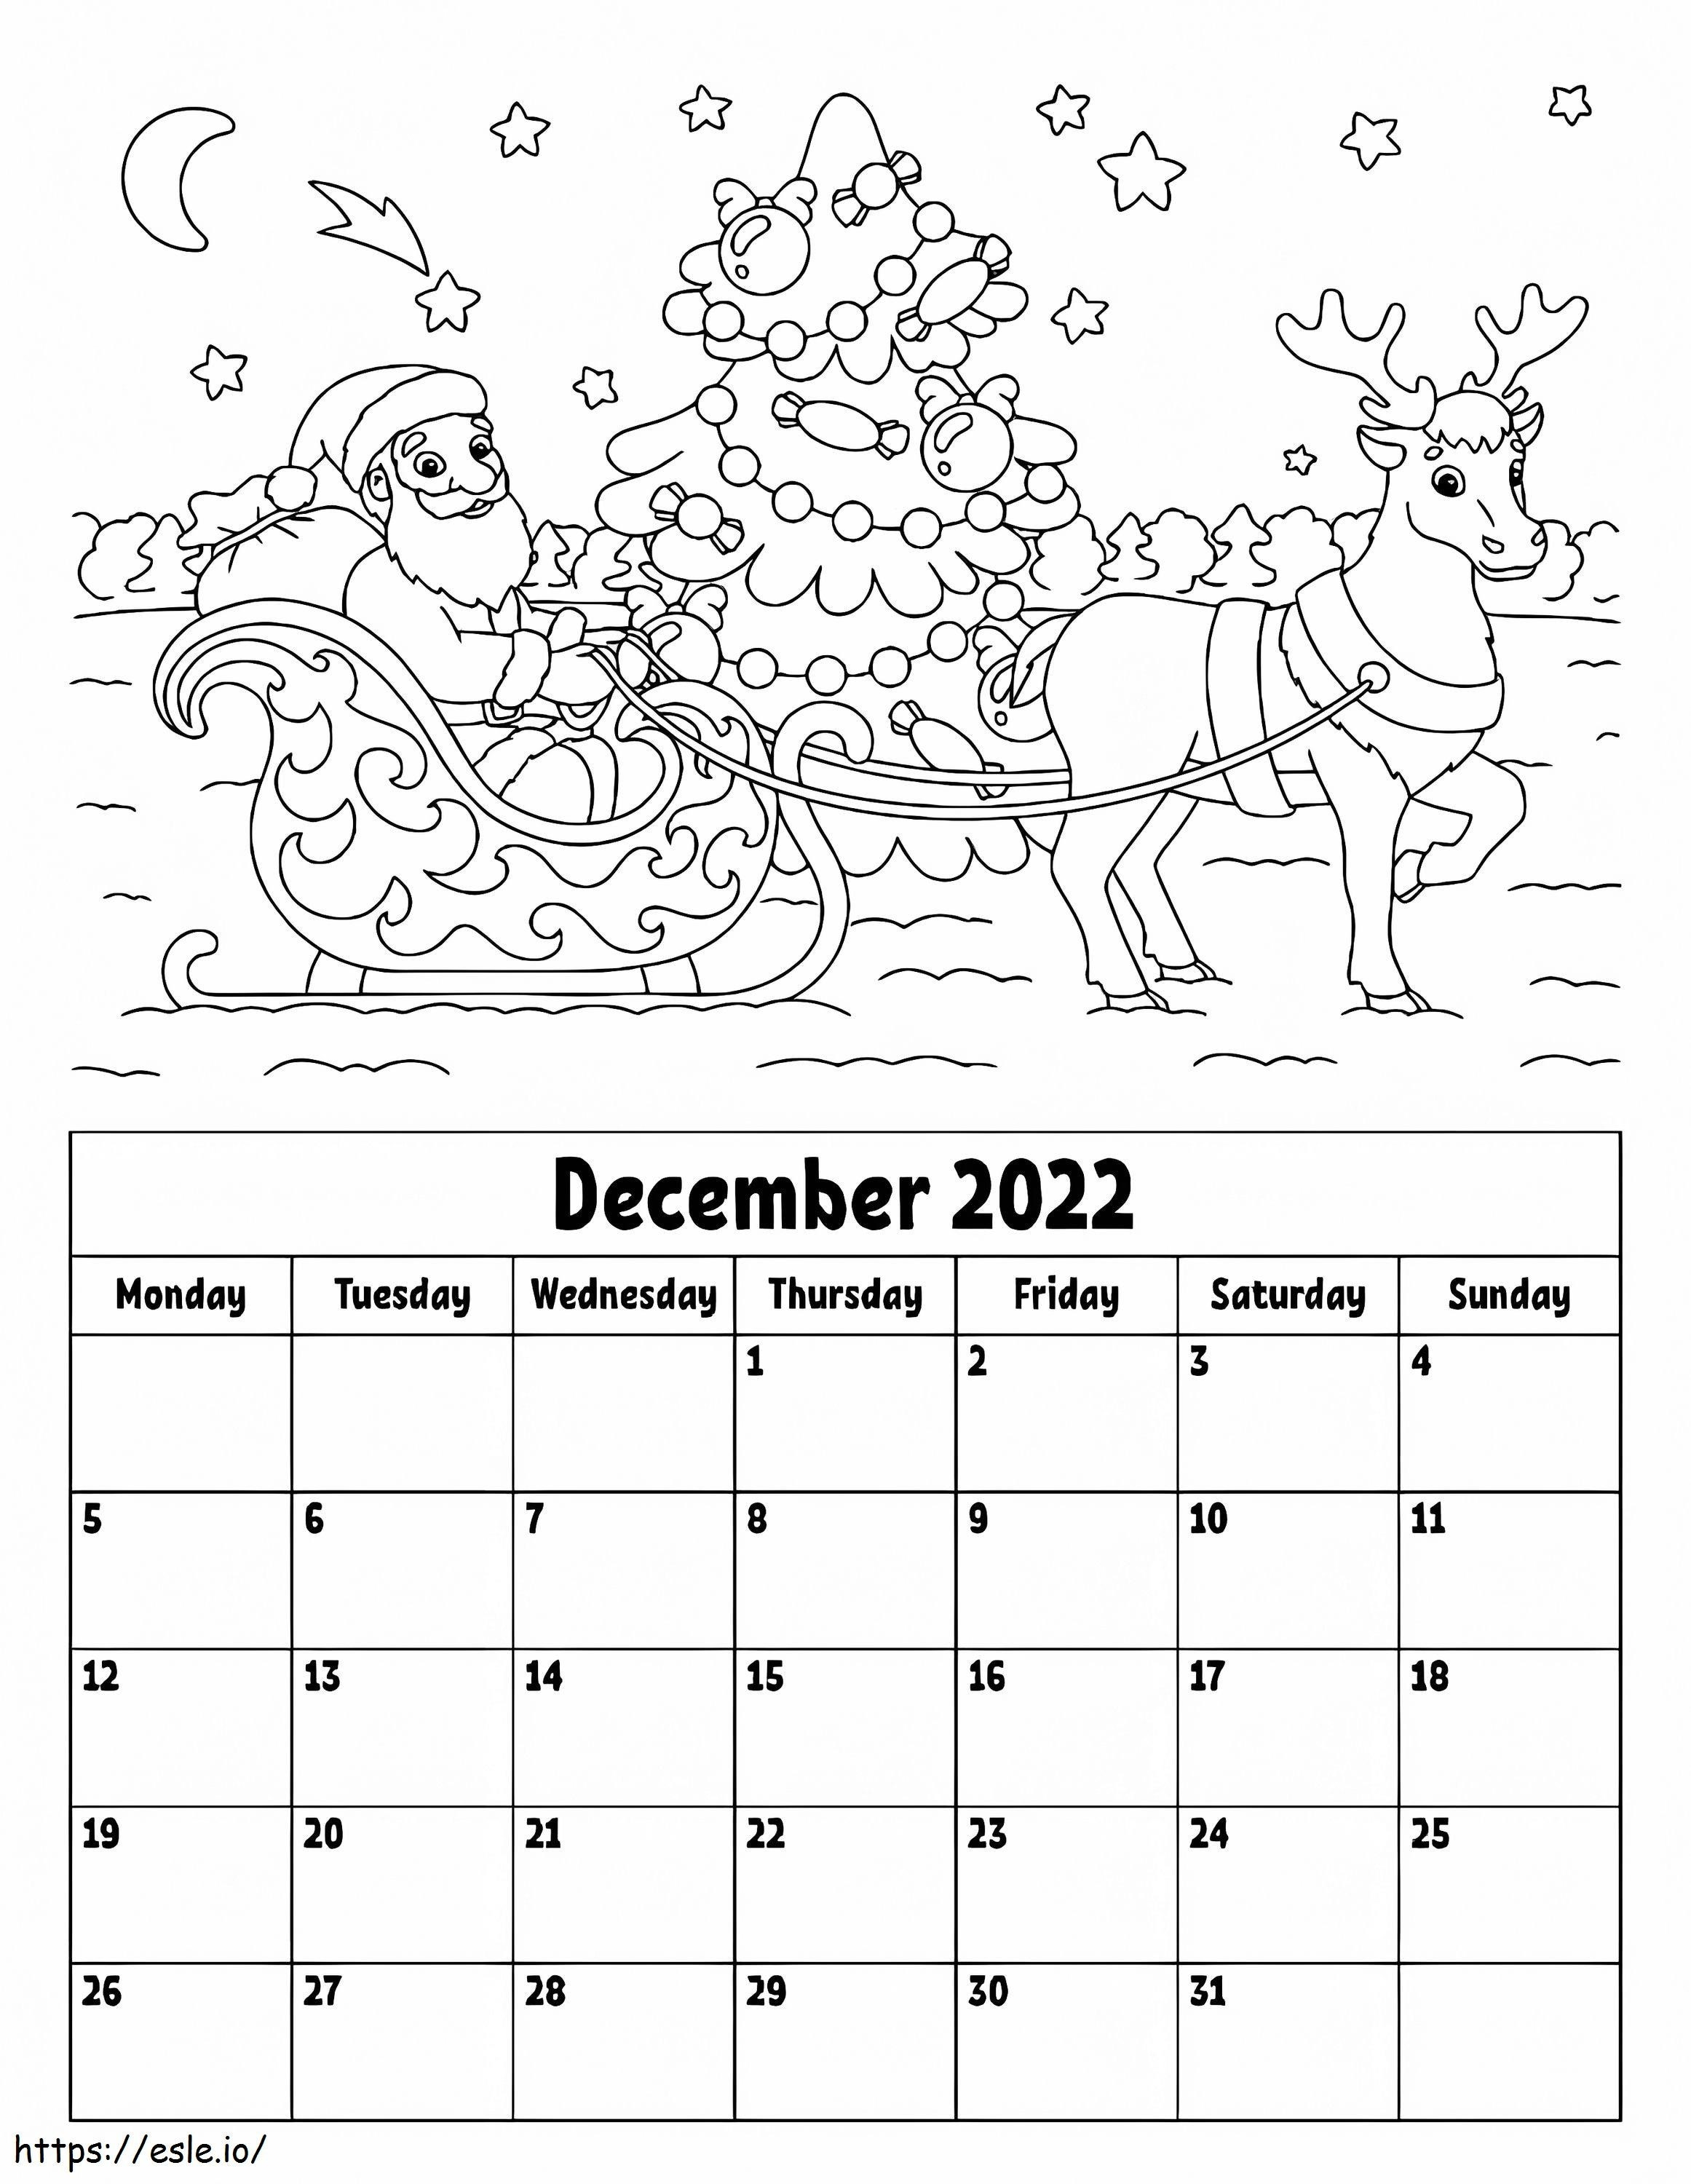 Kalendarz na grudzień 2022 kolorowanka